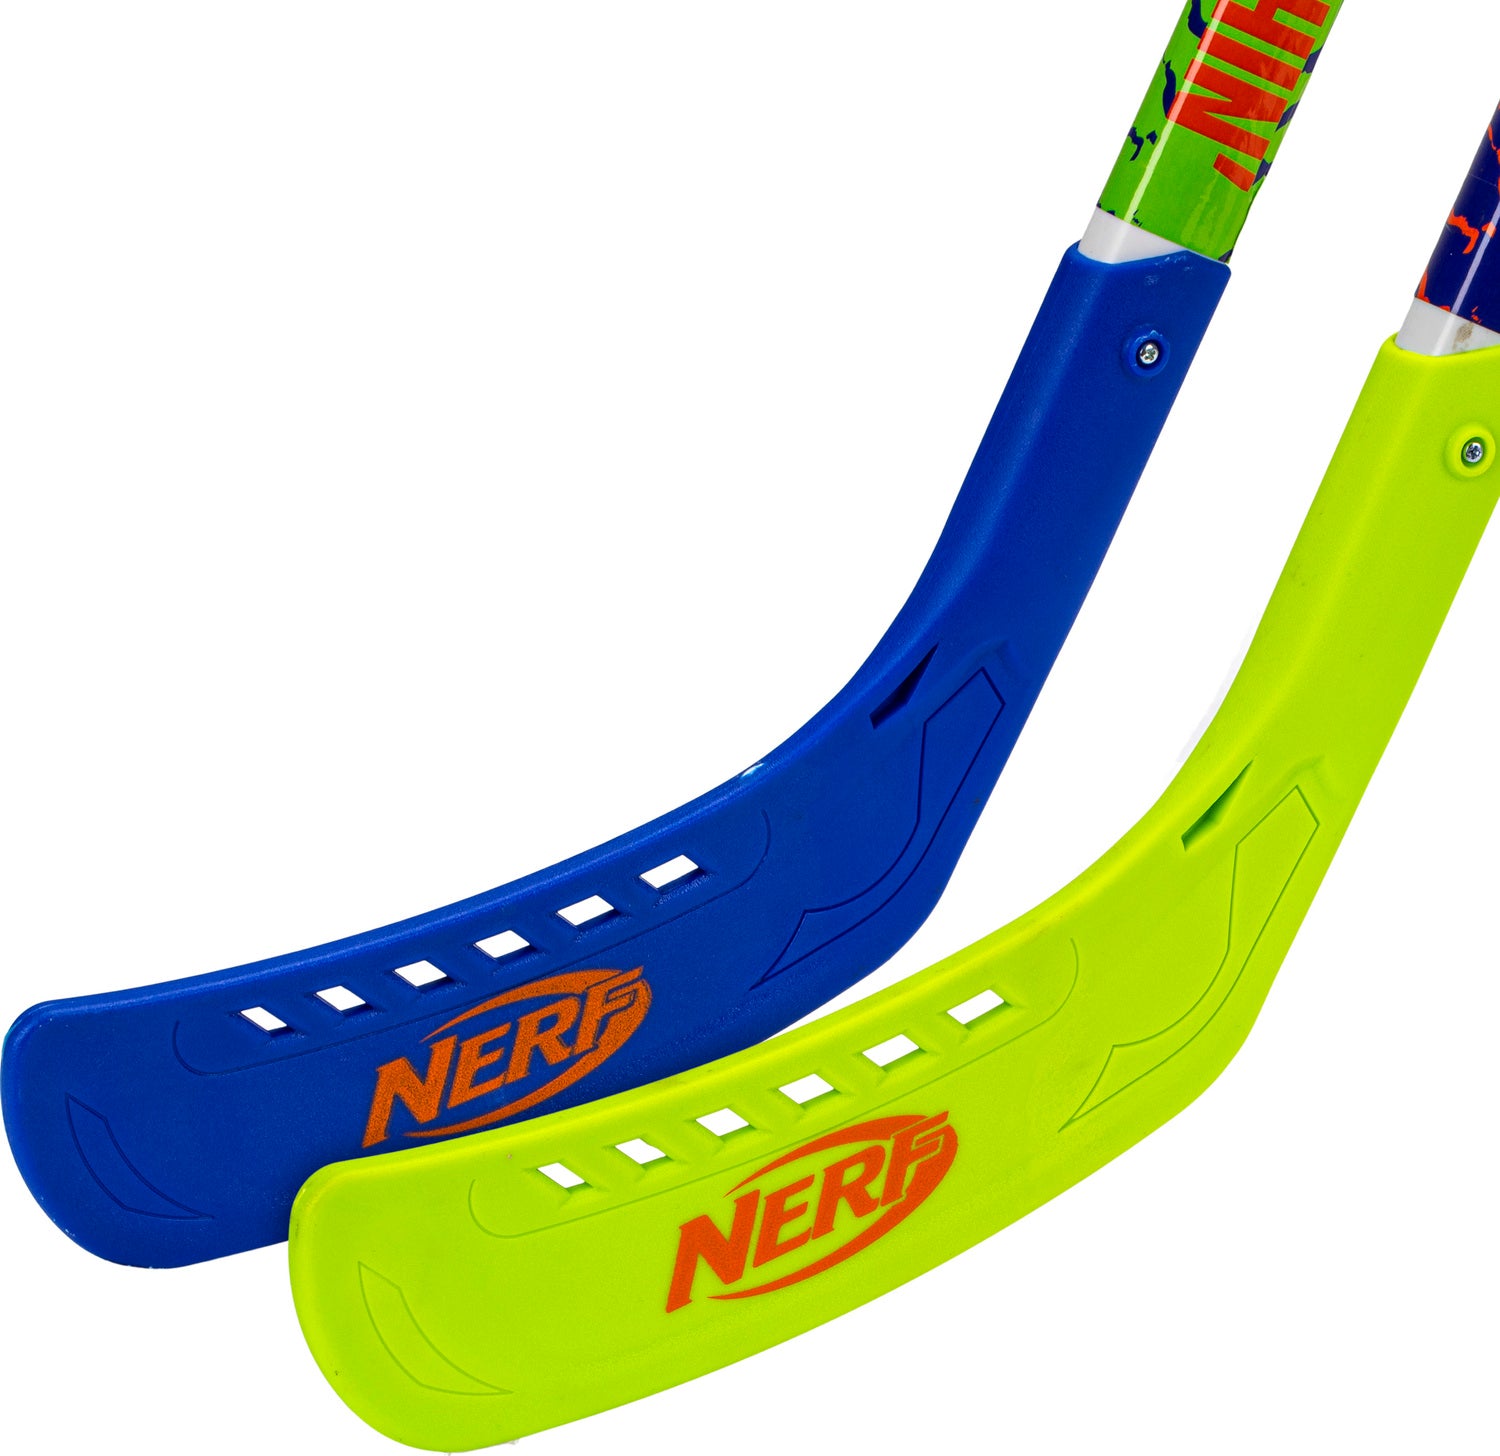 Nerf 2 Player Hockey Set